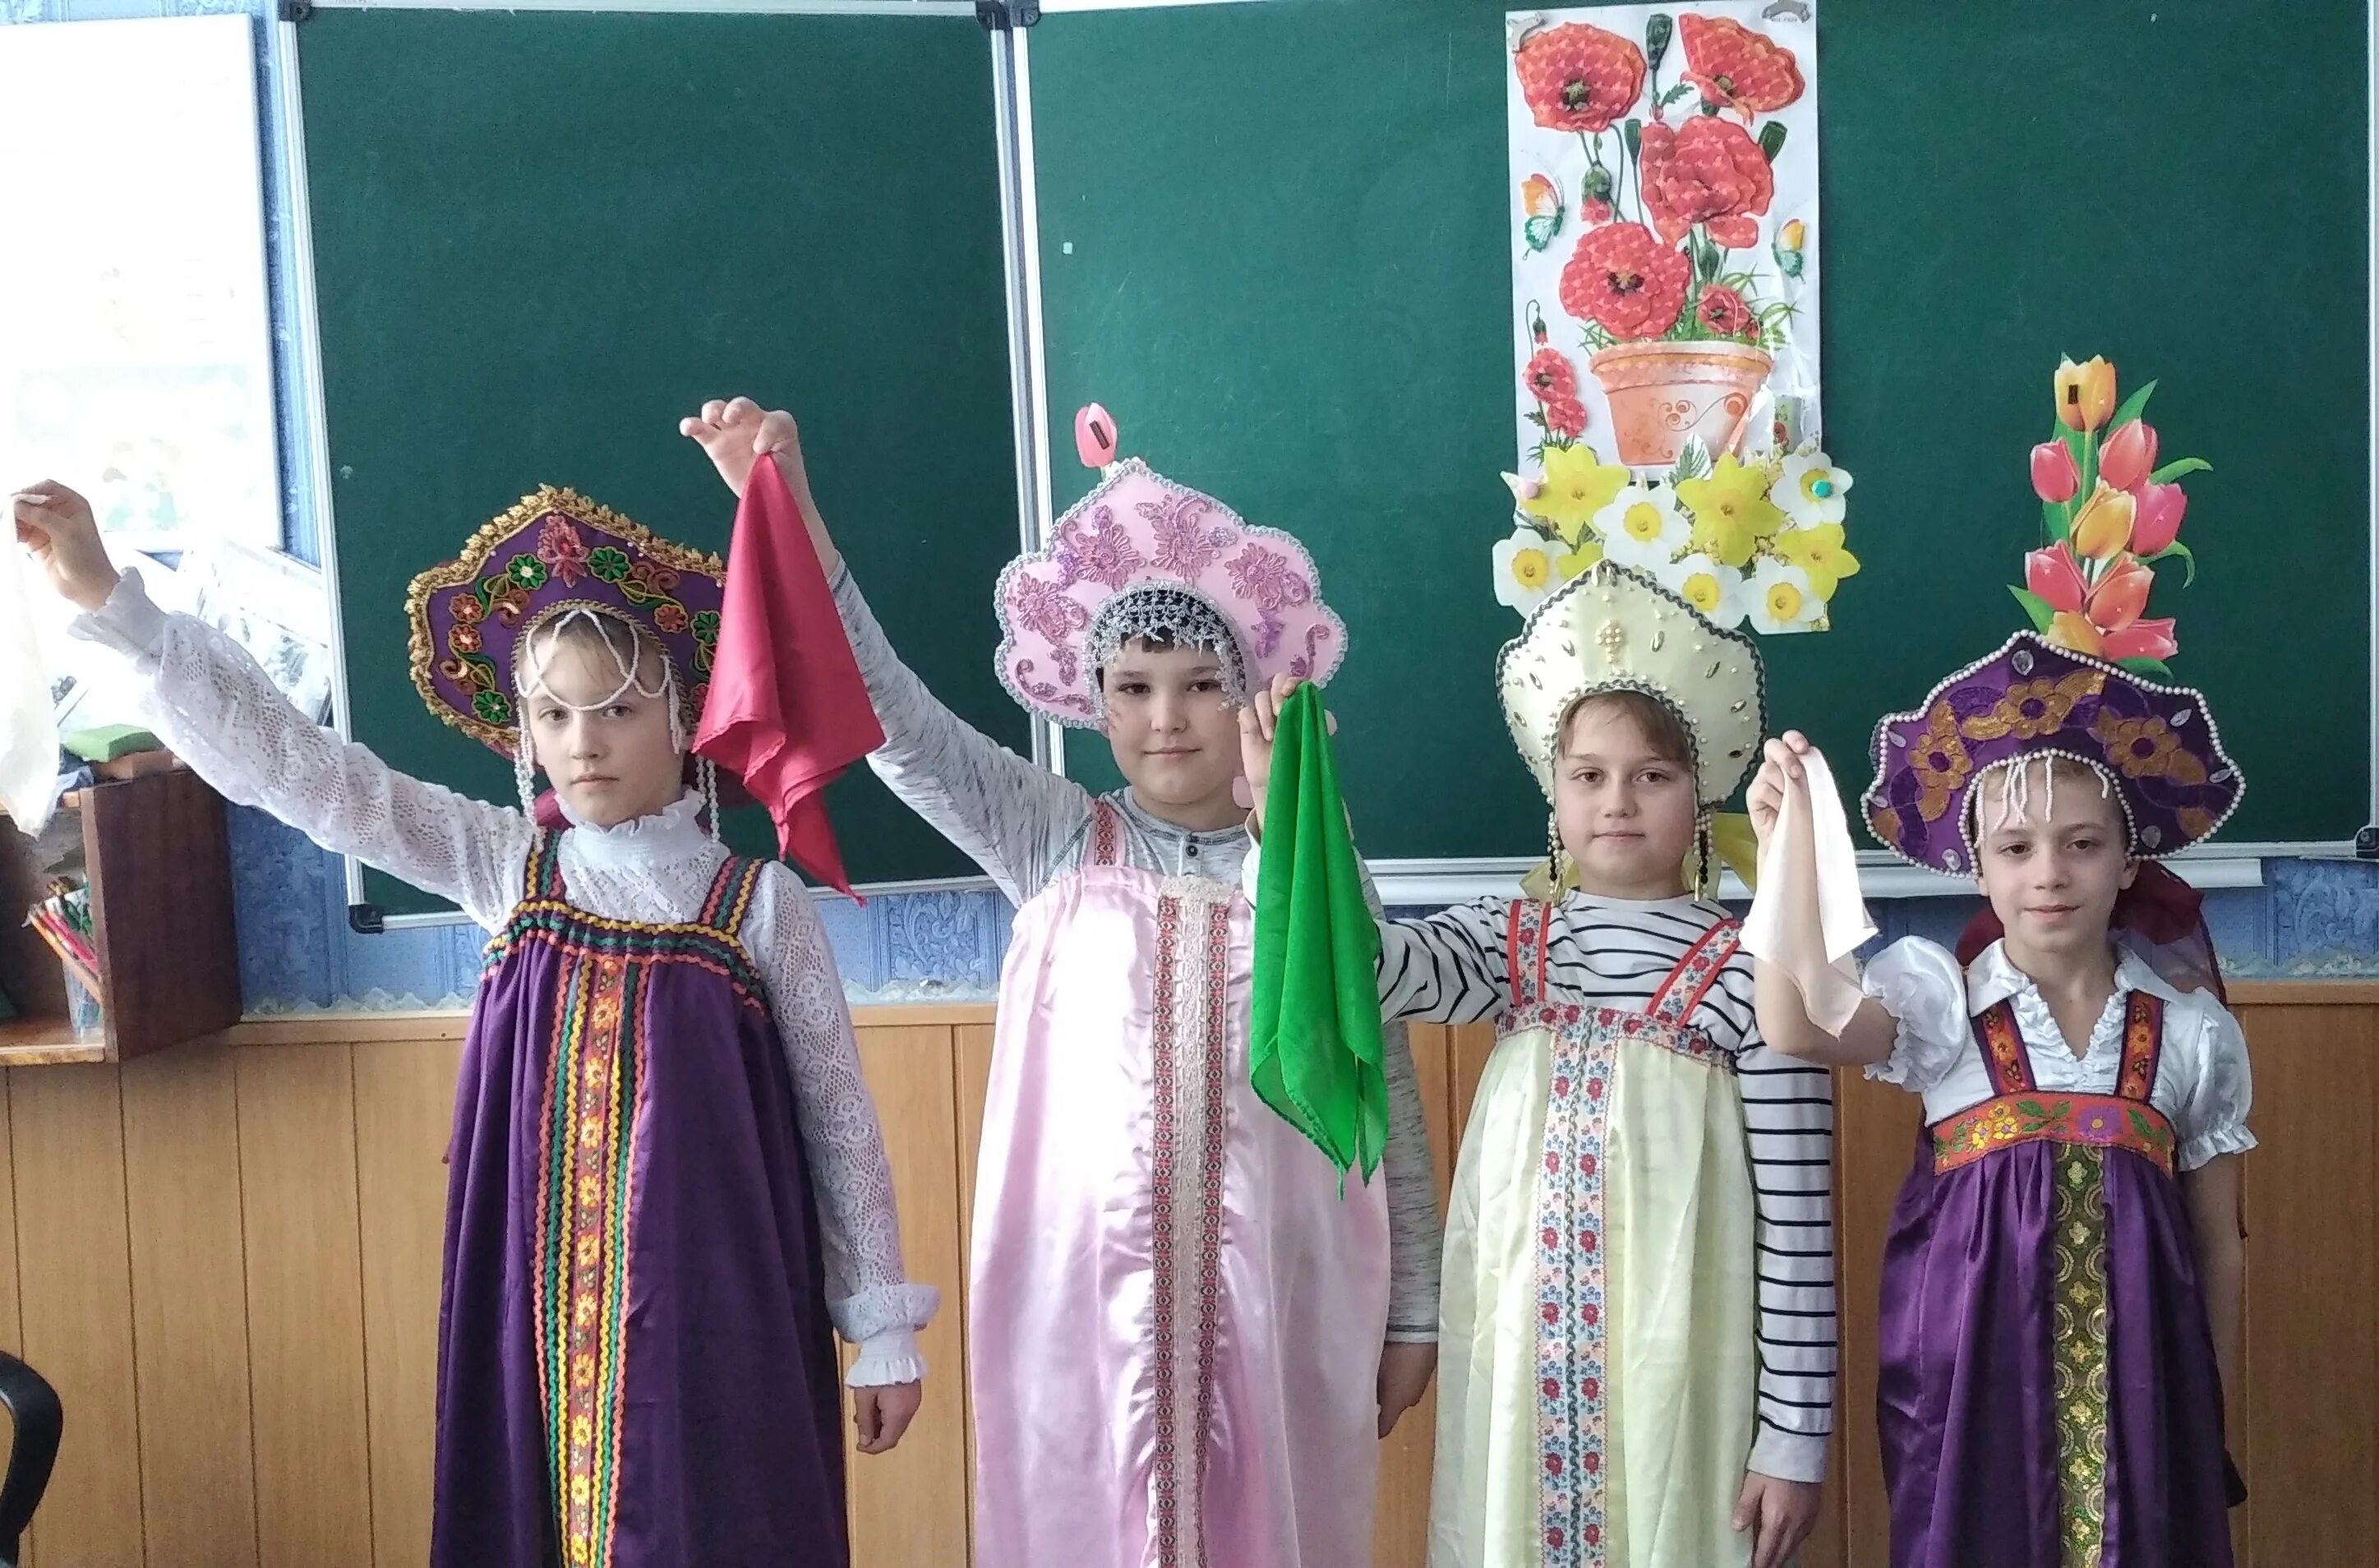 Сайт март рб. Арт-костюмы на праздниках в Беларуси.